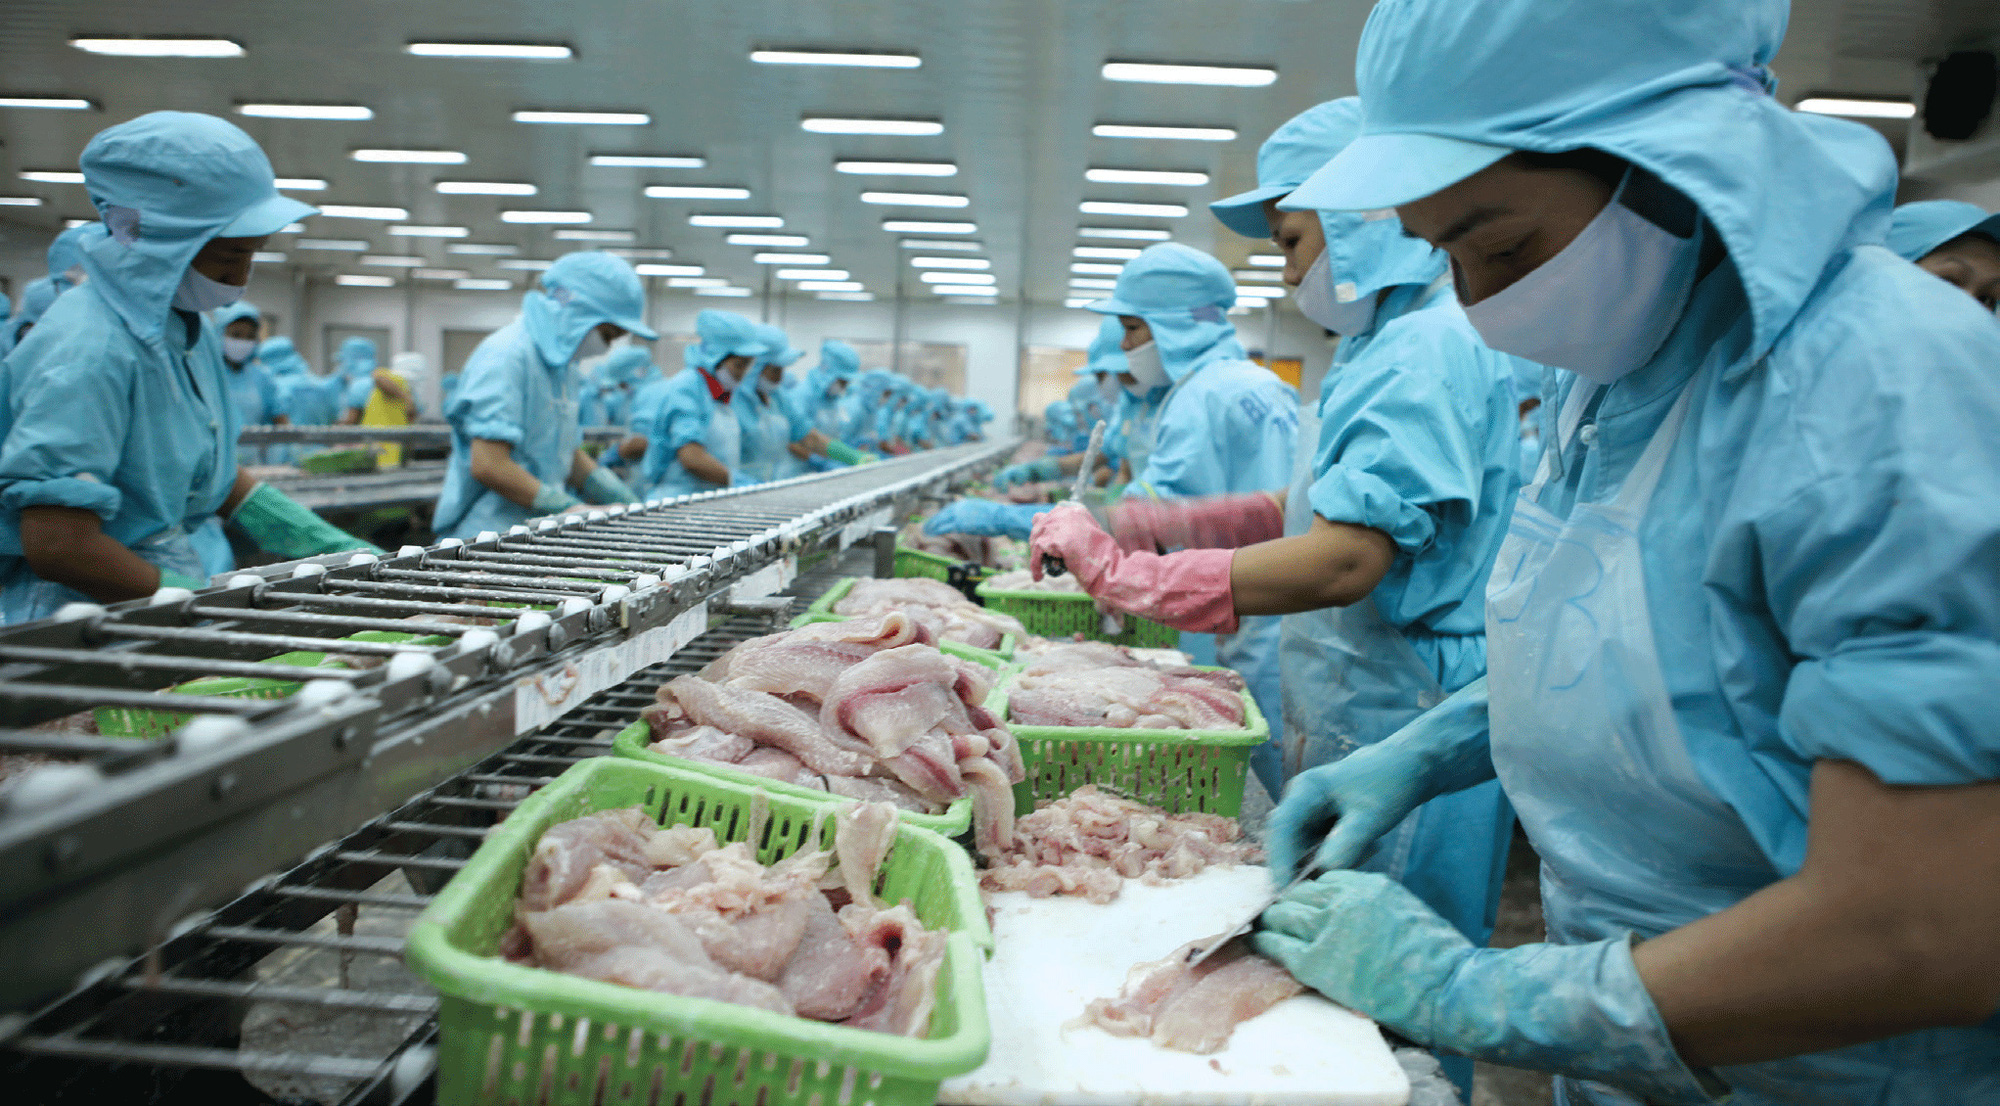 Việt Nam đang cung cấp độc quyền một loài cá cho Trung Quốc, là cá gì mà mới đầu năm Trung Quốc đã mua mạnh? - Ảnh 1.